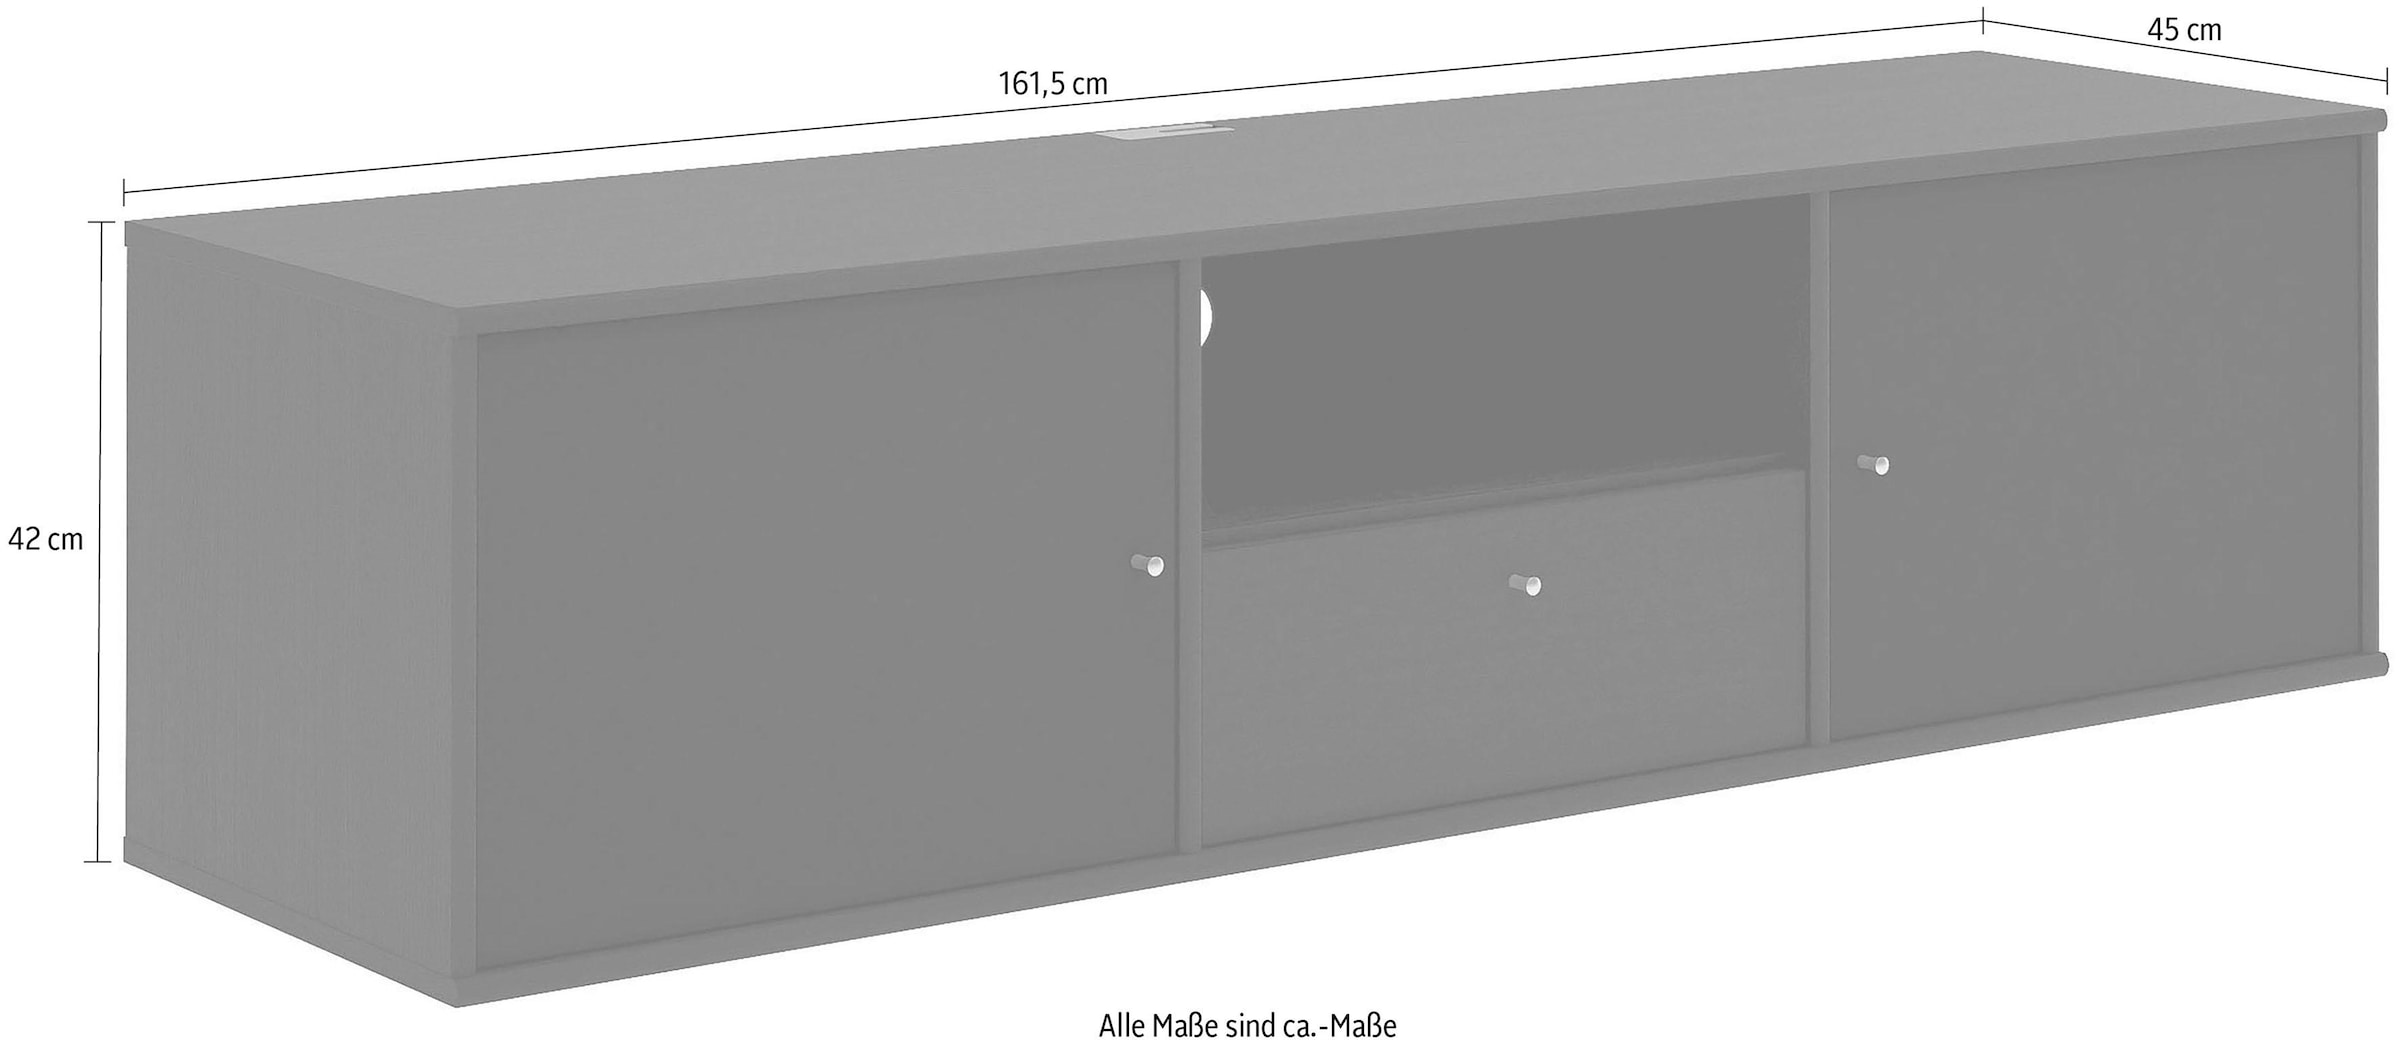 Hammel Furniture TV-Board »Mistral Fernsehschrank, Medienmöbel, Hängend«, mit Türen mit Akustikstoff, Kabeldurchführung, Lowboard, B: 161,5 cm